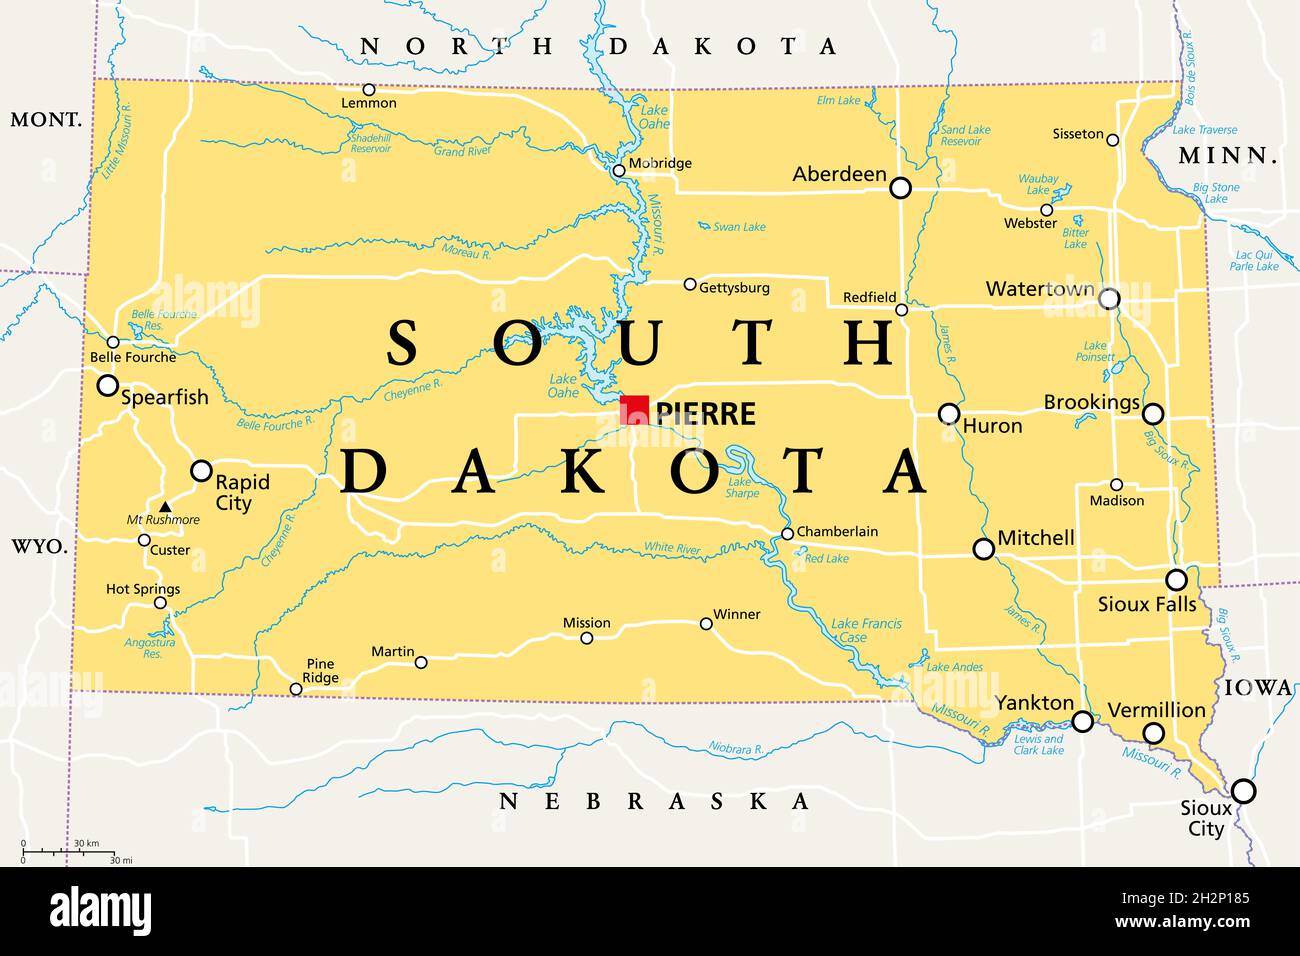 South Dakota, SD, politische Karte, mit der Hauptstadt Pierre und der größten Stadt Sioux Falls. Staat in der Upper Midwestern Subregion der Vereinigten Staaten. Stockfoto